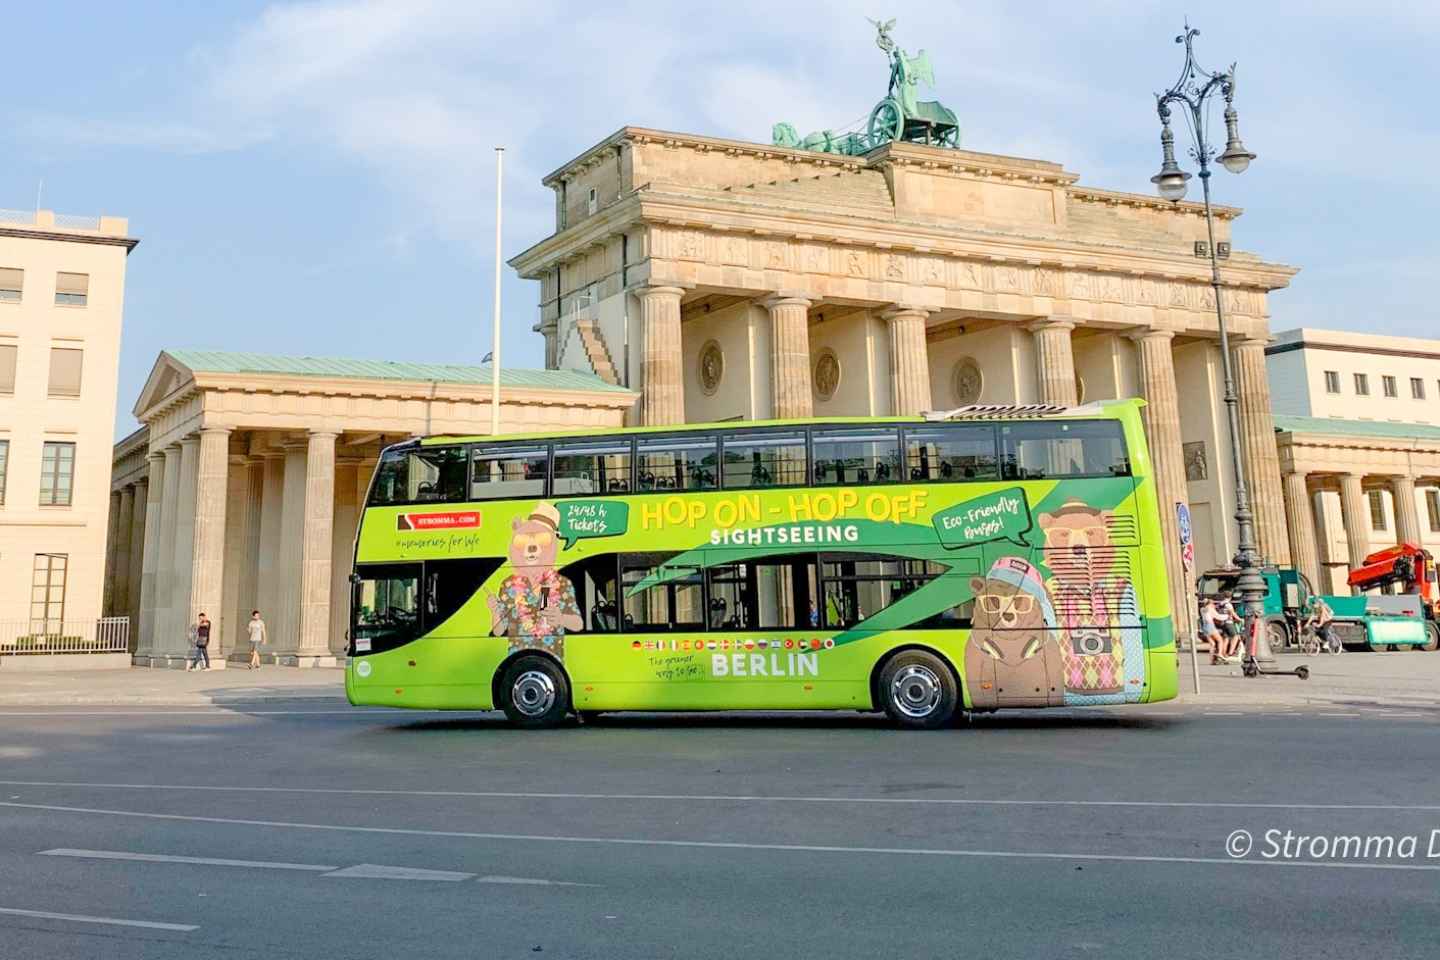 Berlin: Hop-on hop-off-sightseeingbustur med bådmulighed